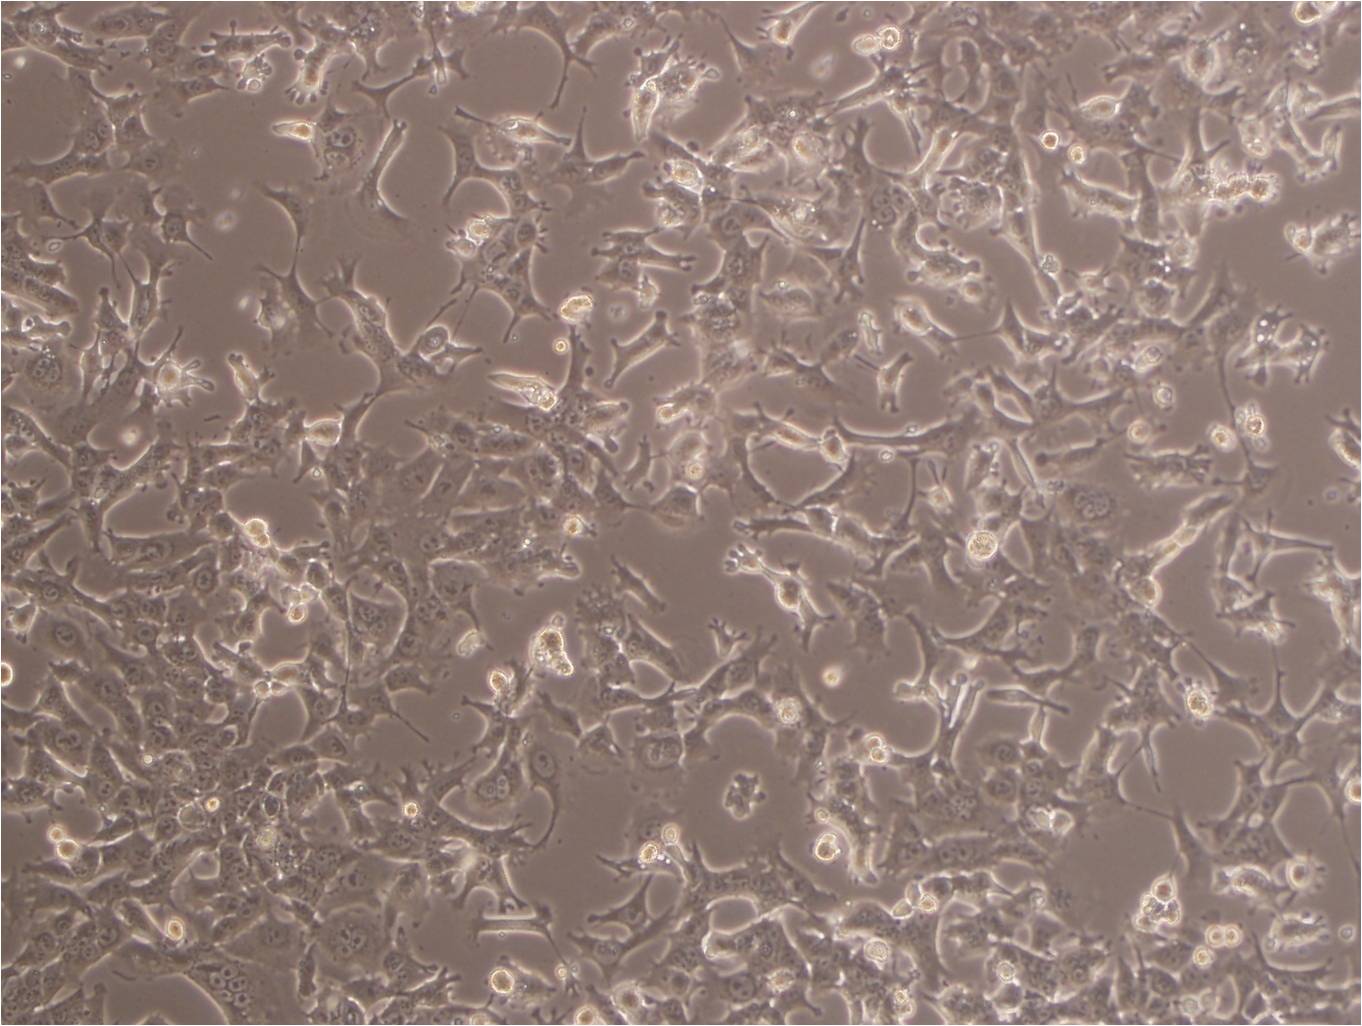 MDA-MB-231-luc:人乳腺癌复苏细胞(提供STR鉴定图谱)